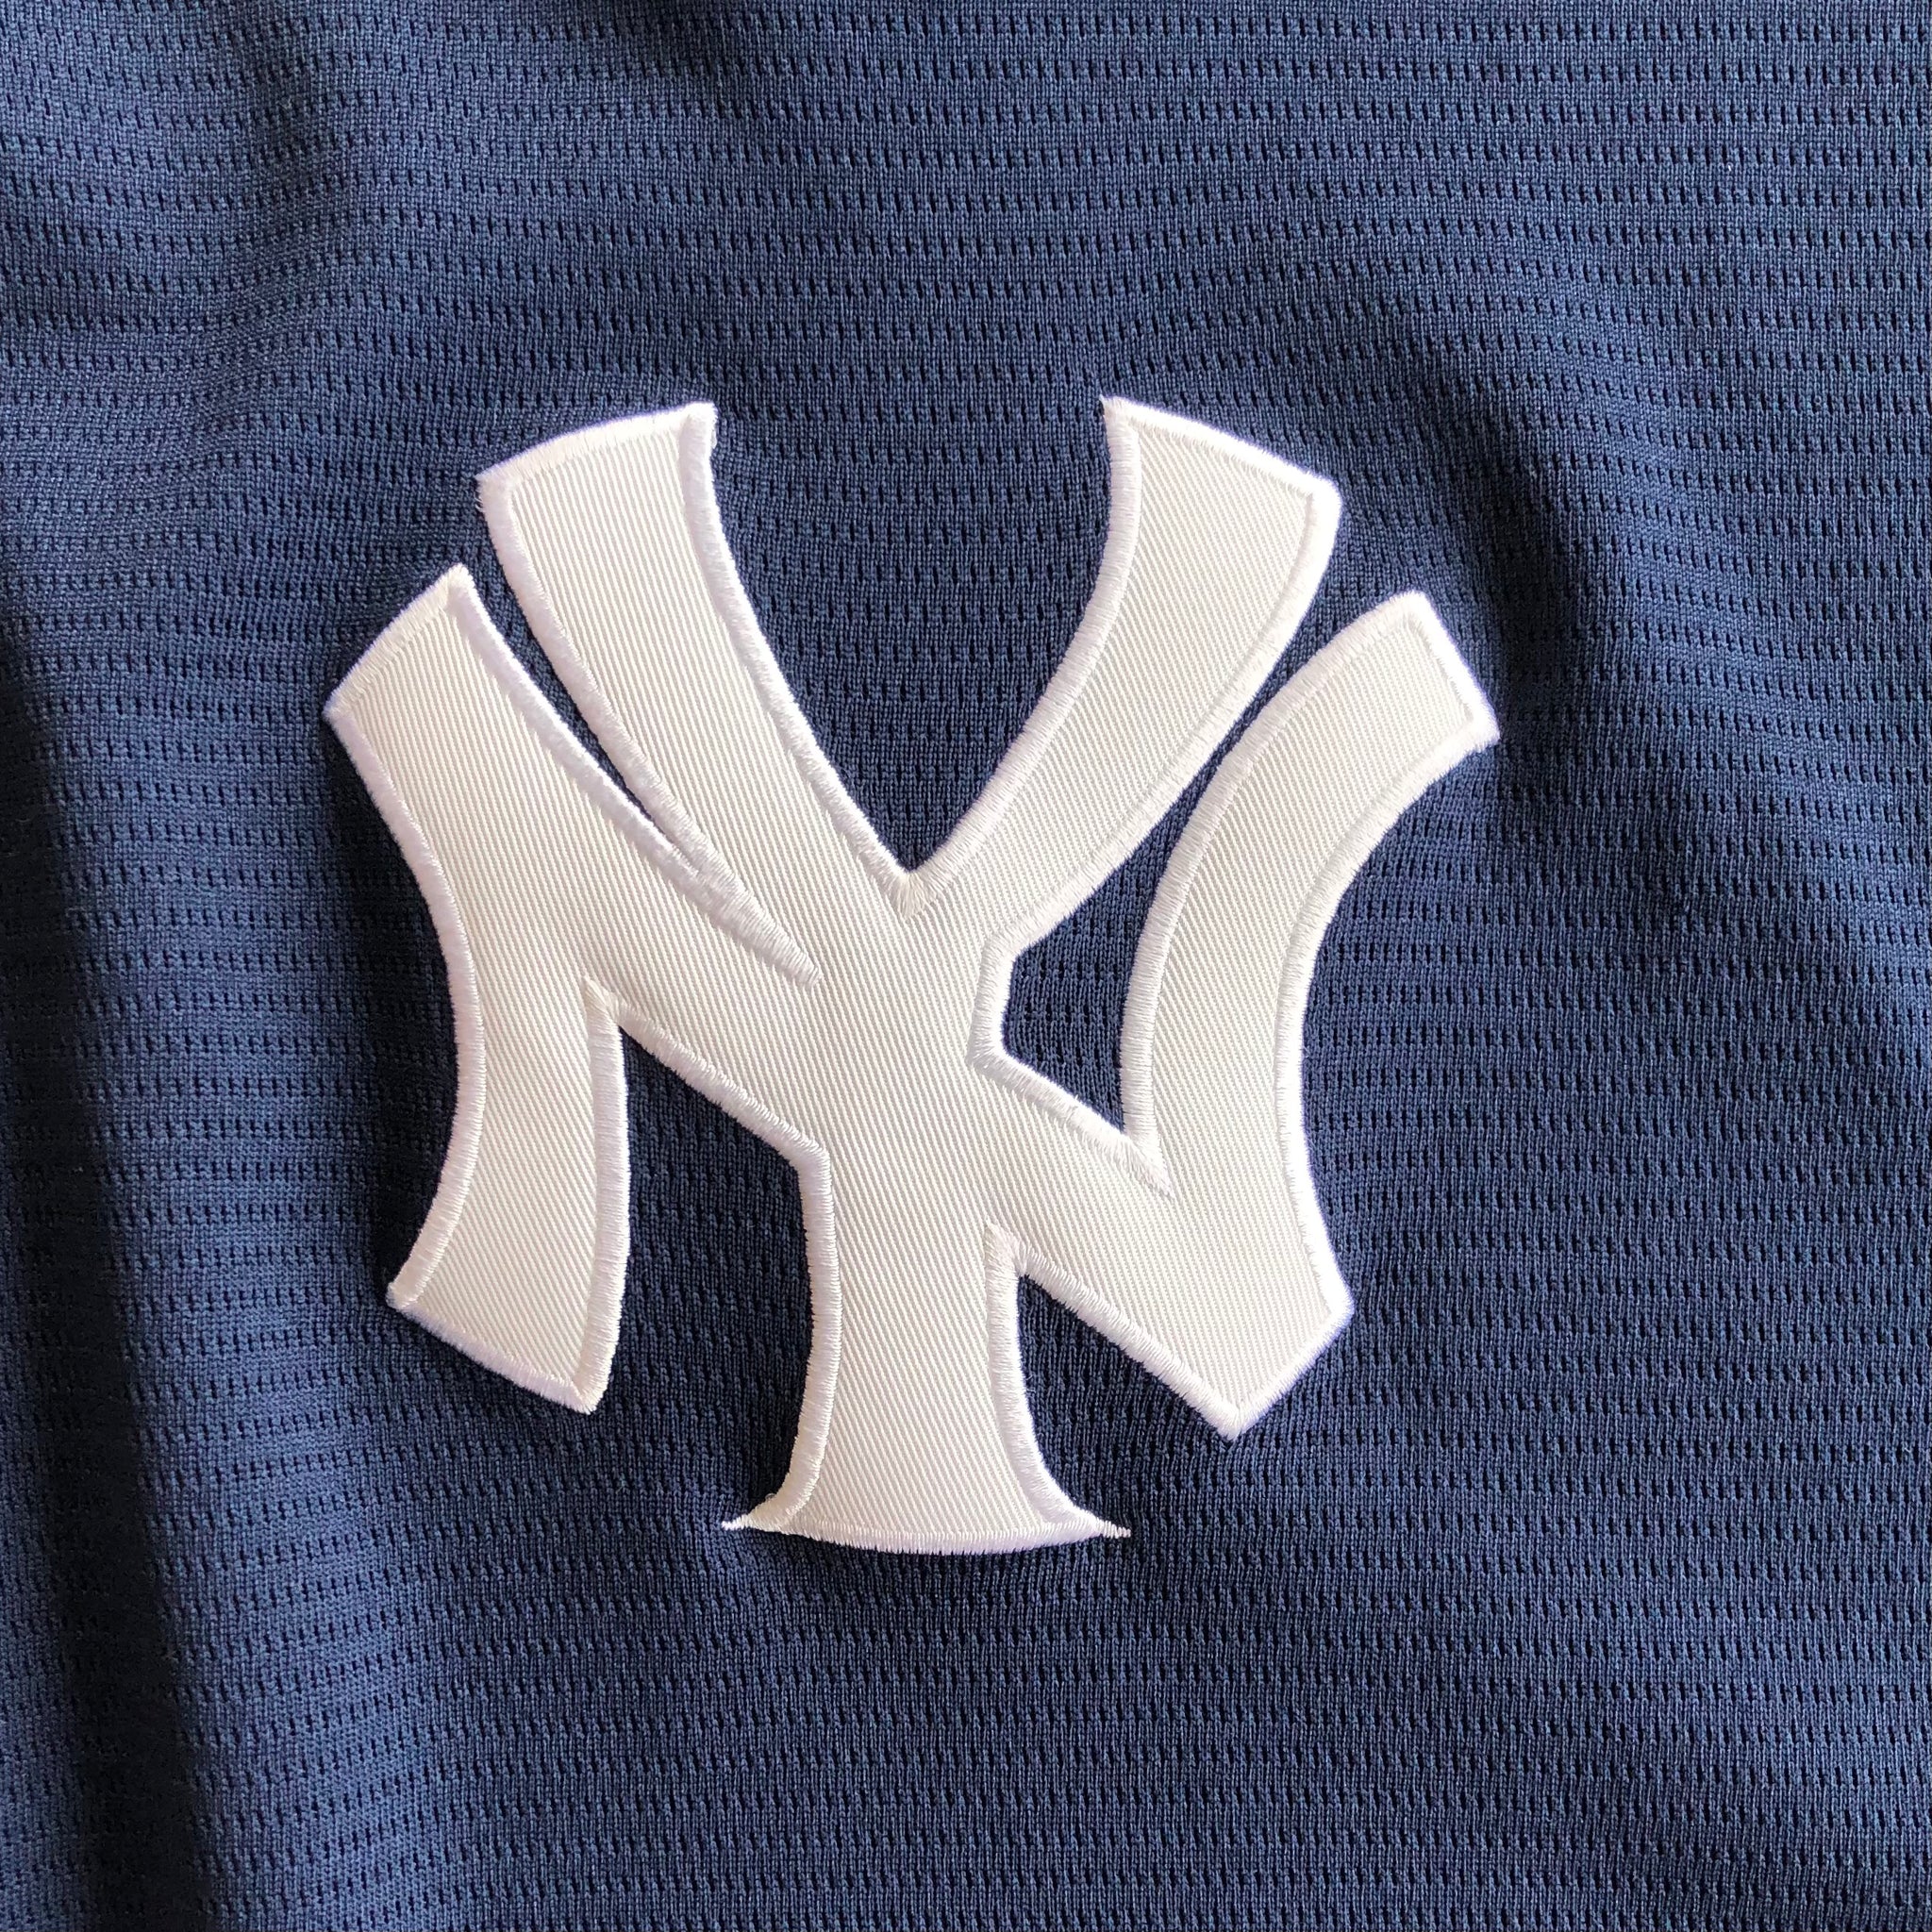 SHOPONEVINTAGE New York Yankees Cropped Zip-Up Tee